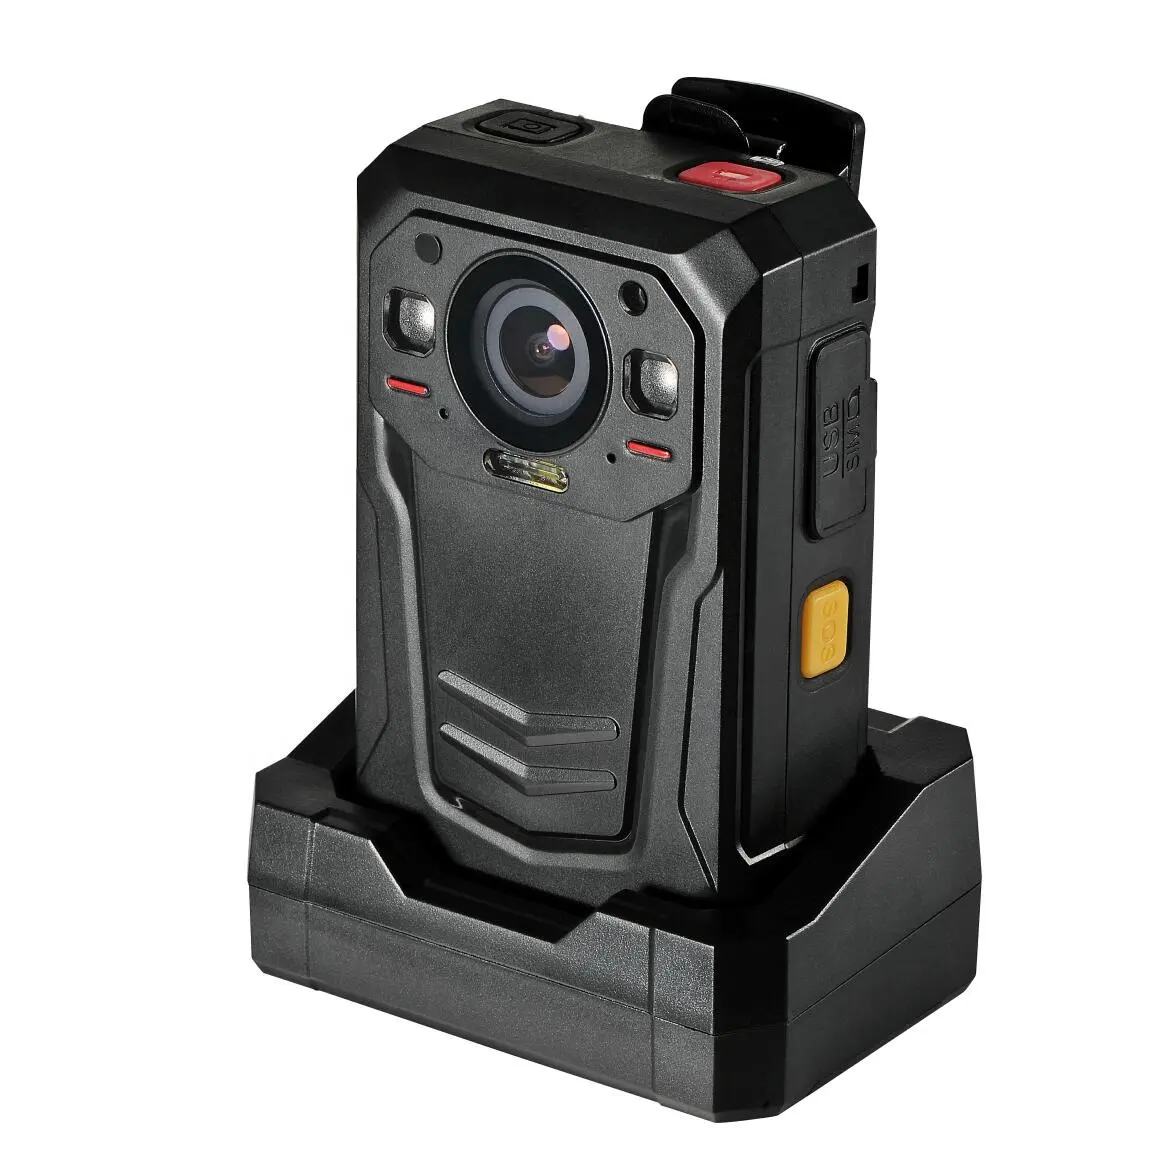 Mini caméra corporelle personnelle enregistreur vidéo pour les agents de police